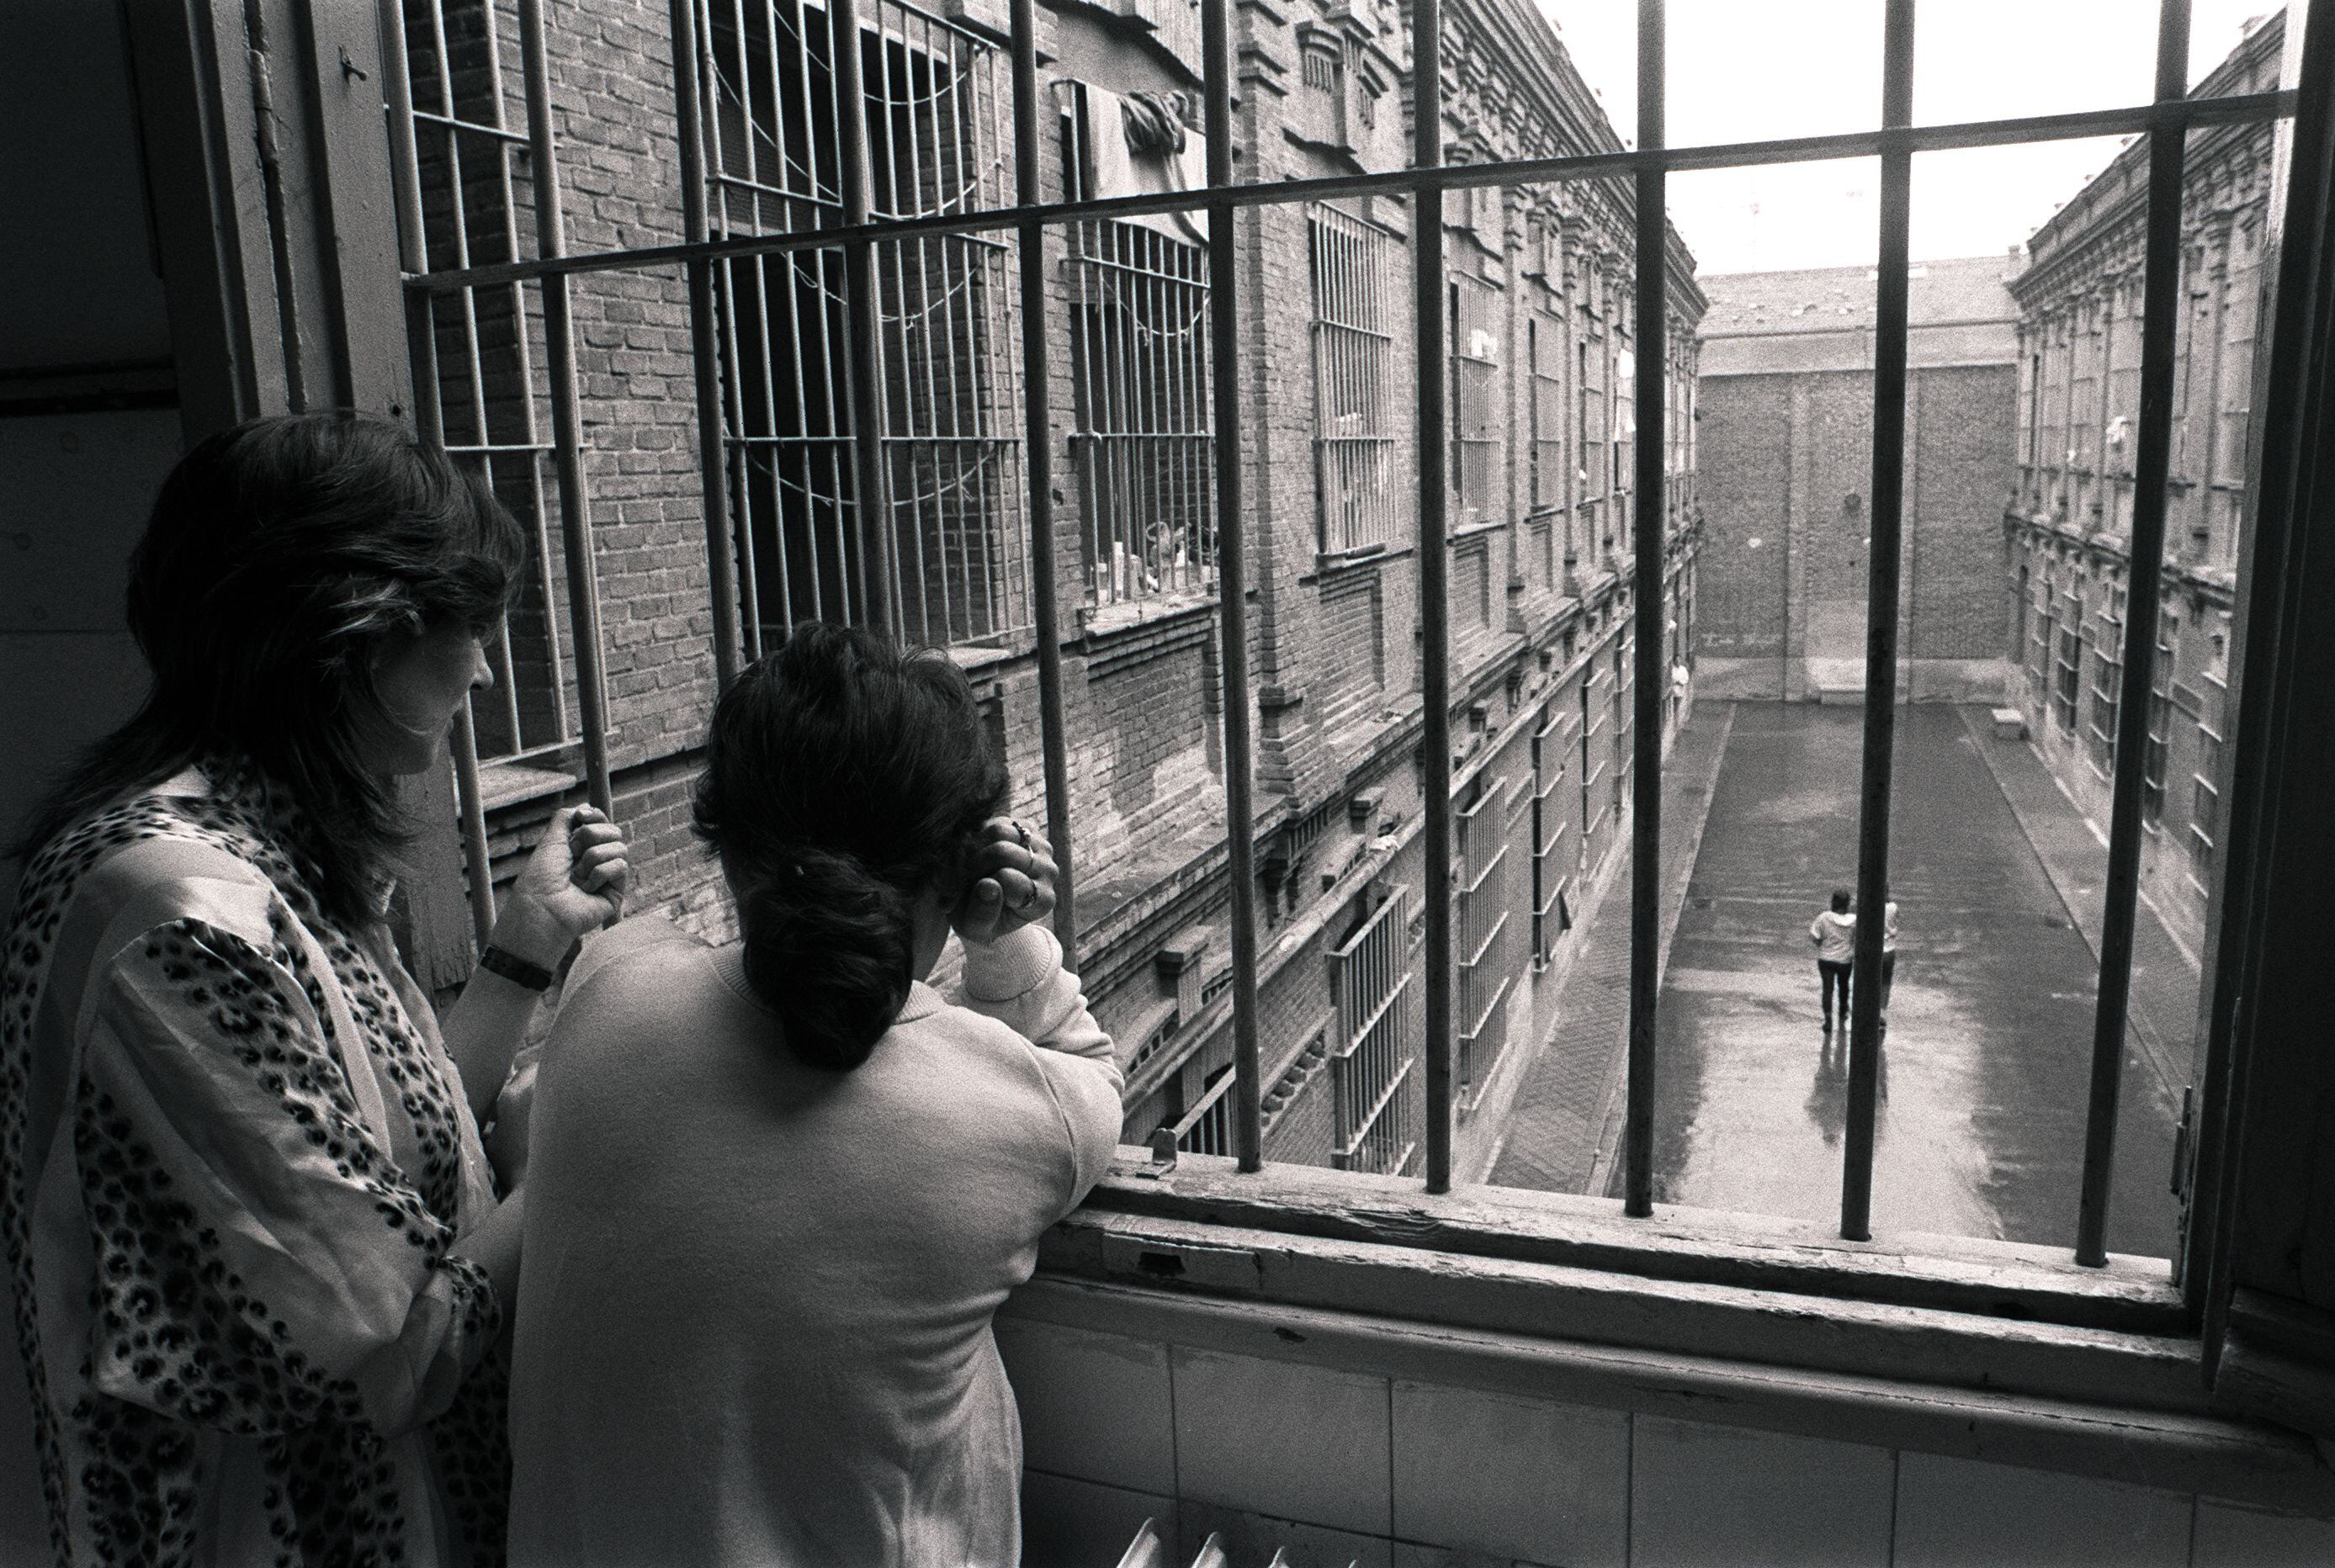  La prisión de Yeserías conserva su antigua función penitenciaria: hoy es el Centro de Inserción Social Victoria Kent.